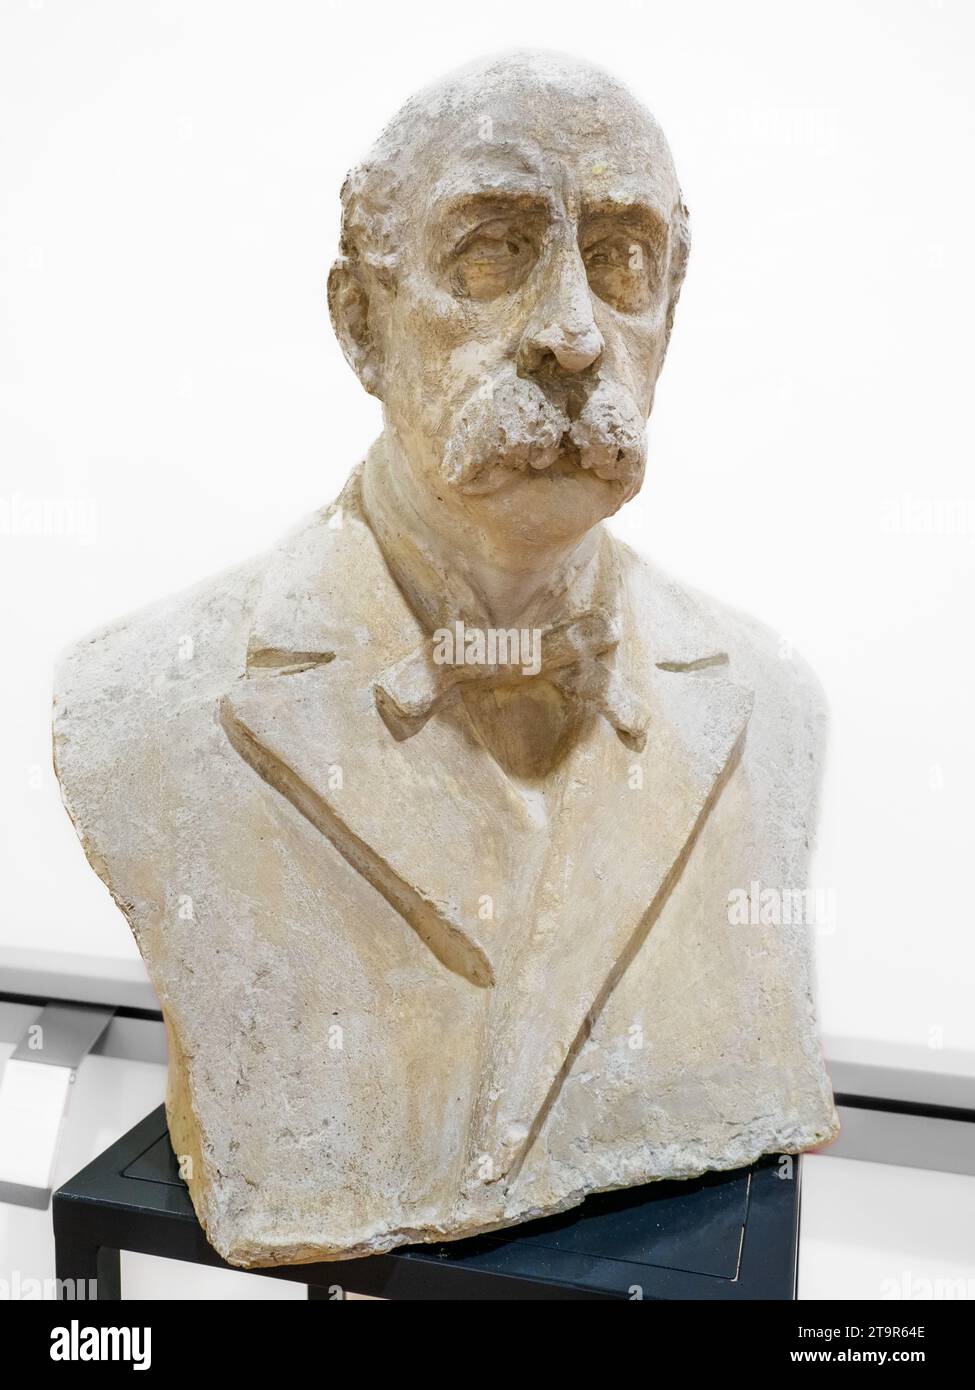 Buste de Francesco Crispi (1818 – 1901) était un patriote et homme d'État italien. Il fut l'un des principaux protagonistes du Risorgimento et l'un des architectes de l'unification italienne en 1860. Crispi a été Premier ministre de l'Italie pendant six ans, de 1887 à 1891, et de nouveau de 1893 à 1896 - Museo risorgimentale garibaldino Giacomo Giustolisi - Marsala, Sicile, Italie Banque D'Images